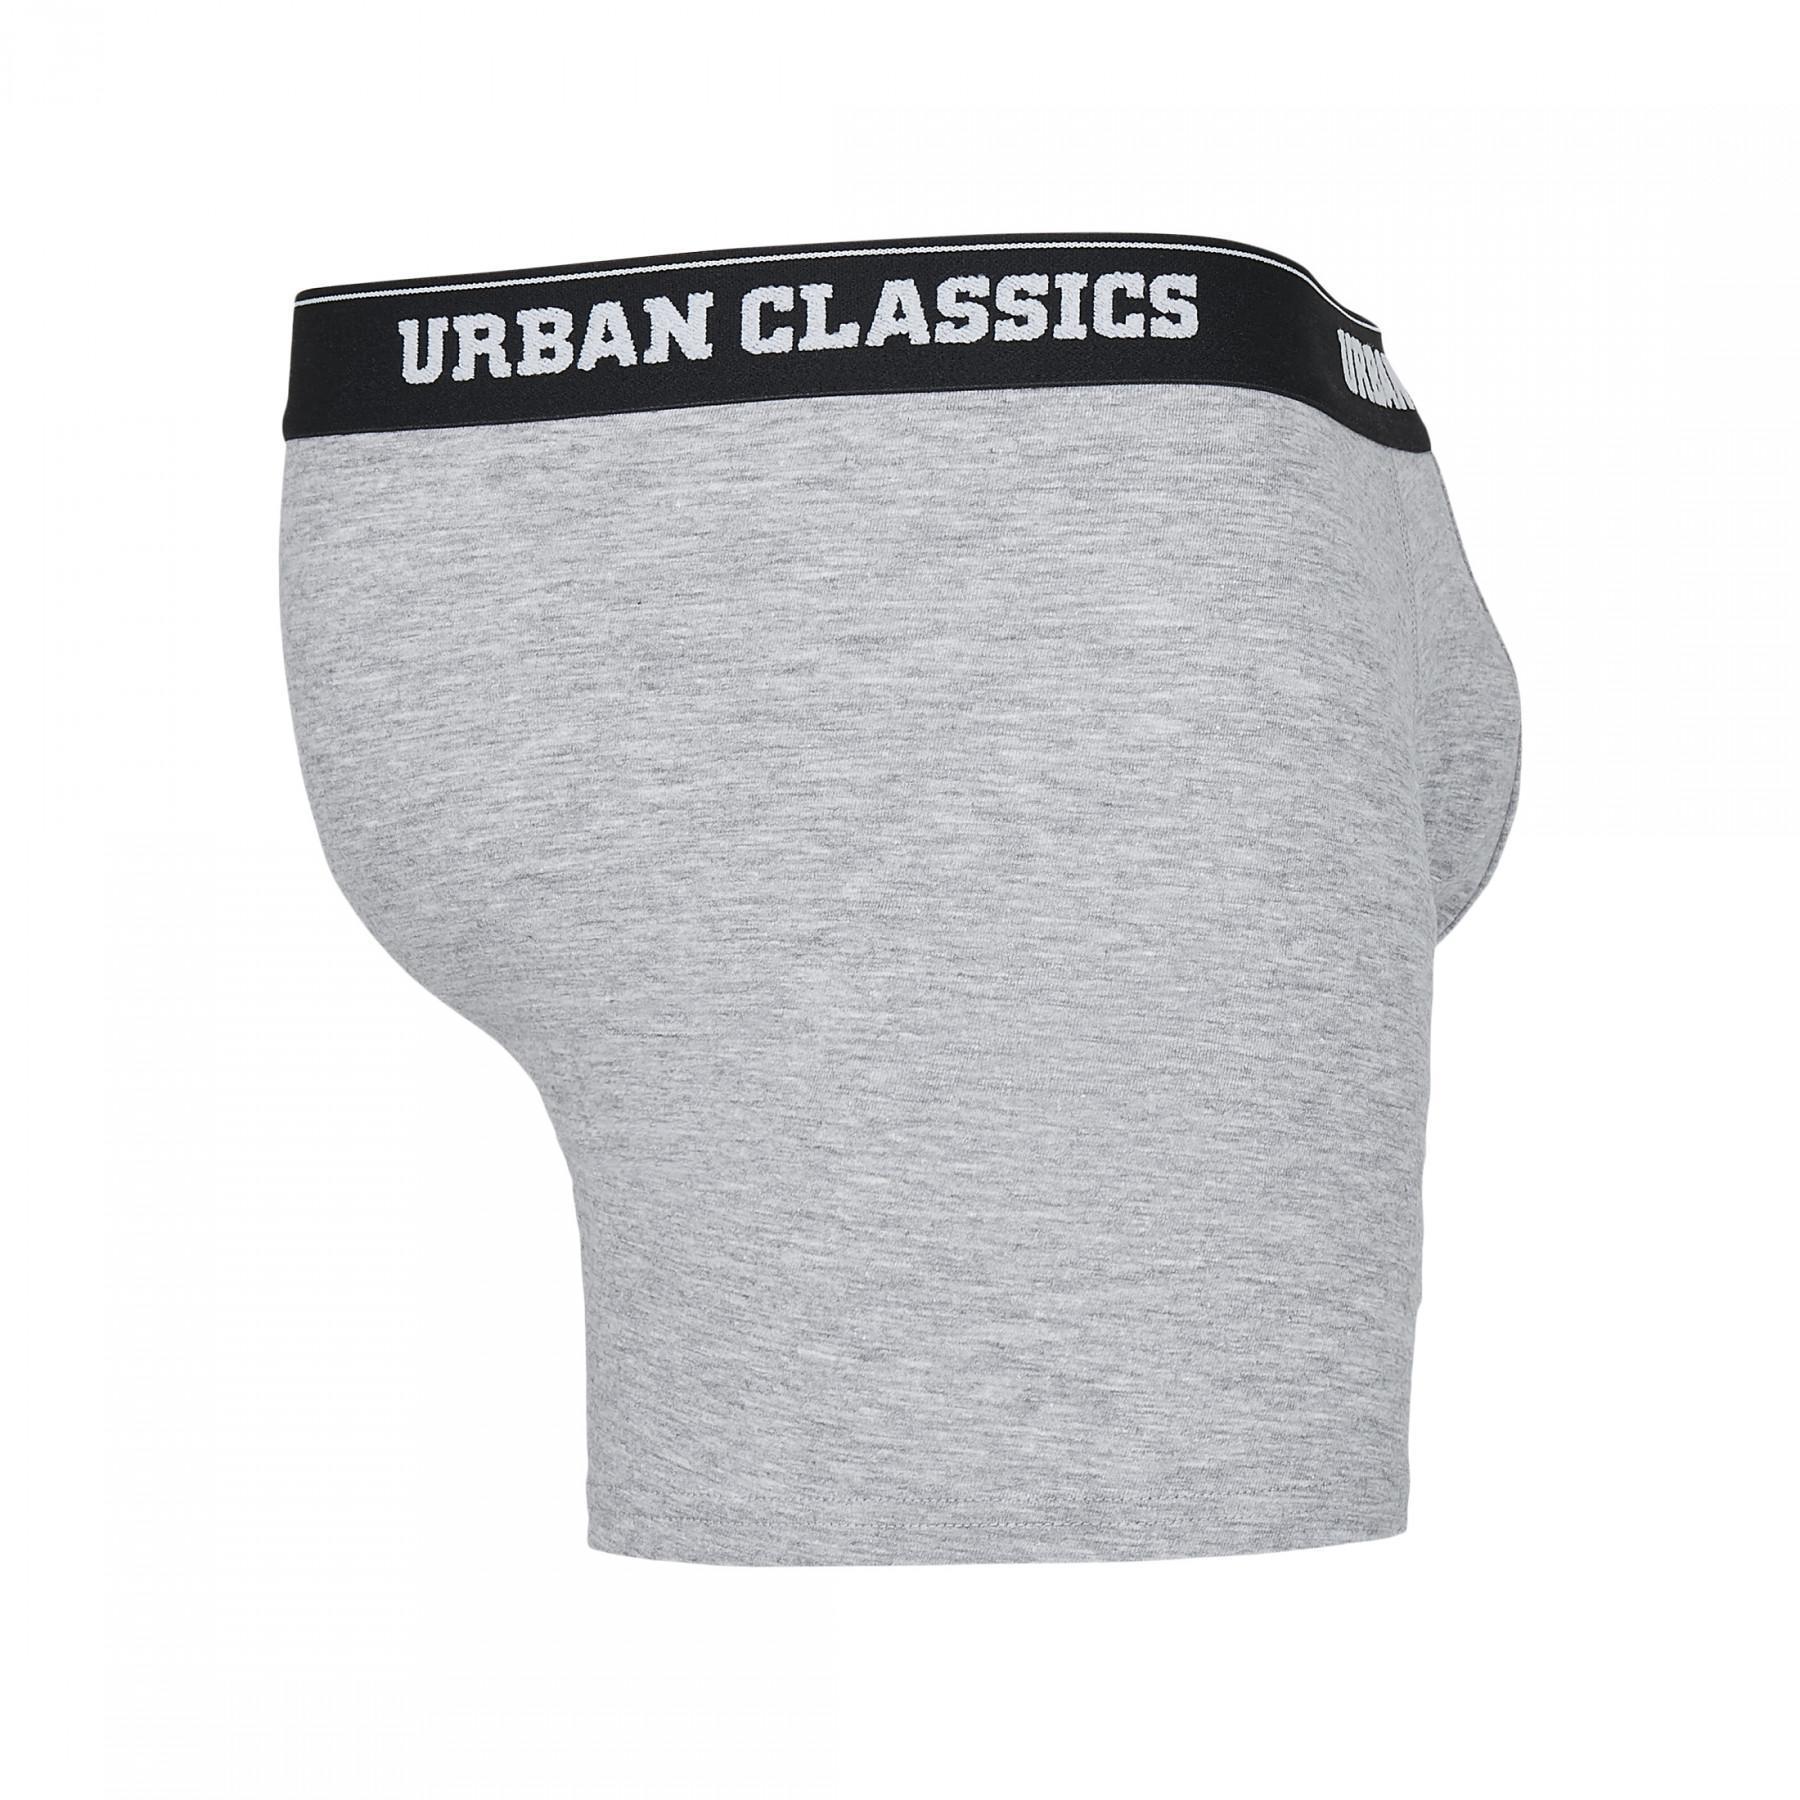 Boxer Urban Classics (3pcs)